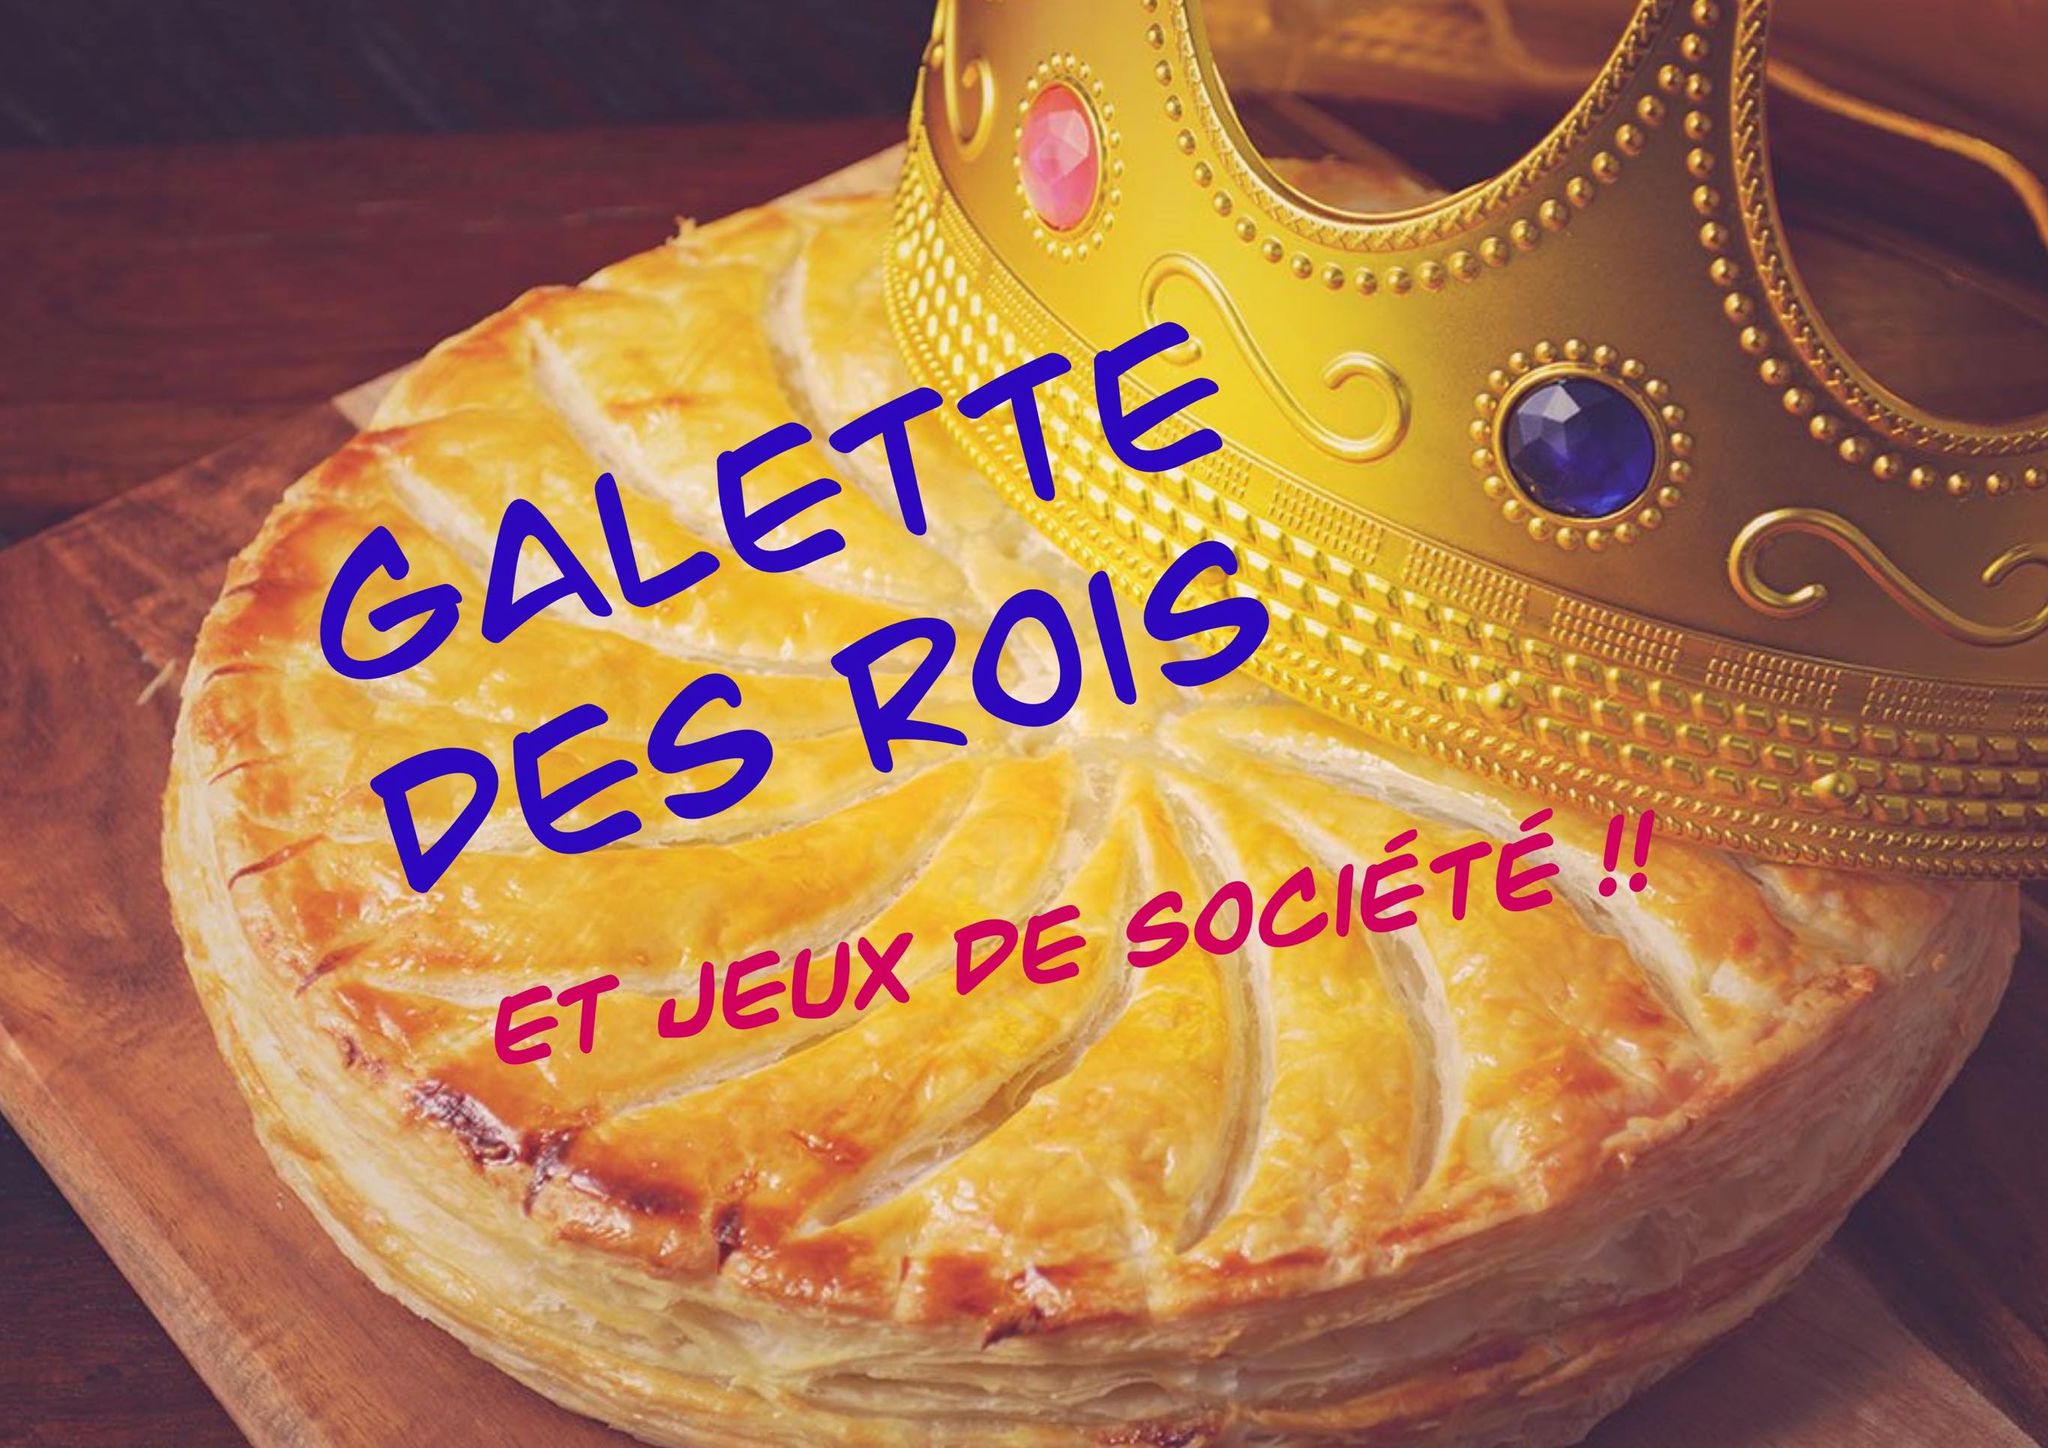 You are currently viewing Galette des rois et jeux de société